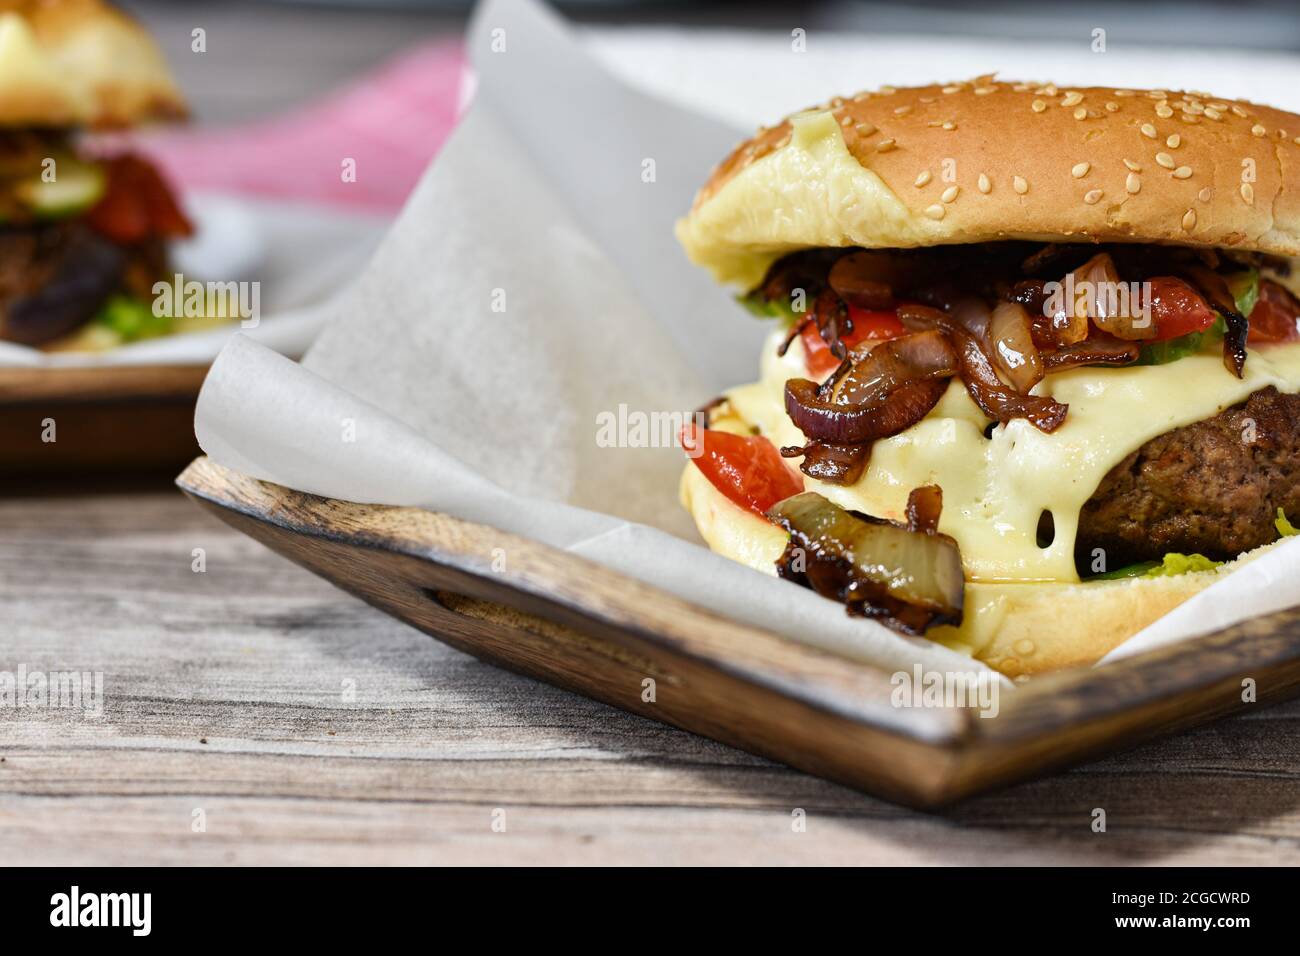 Köstlicher Gourmet-Cheeseburger mit glasierten karamellisierten roten Zwiebeln, schweizer Käse, Gurken und filettierten Tomaten Stockfoto